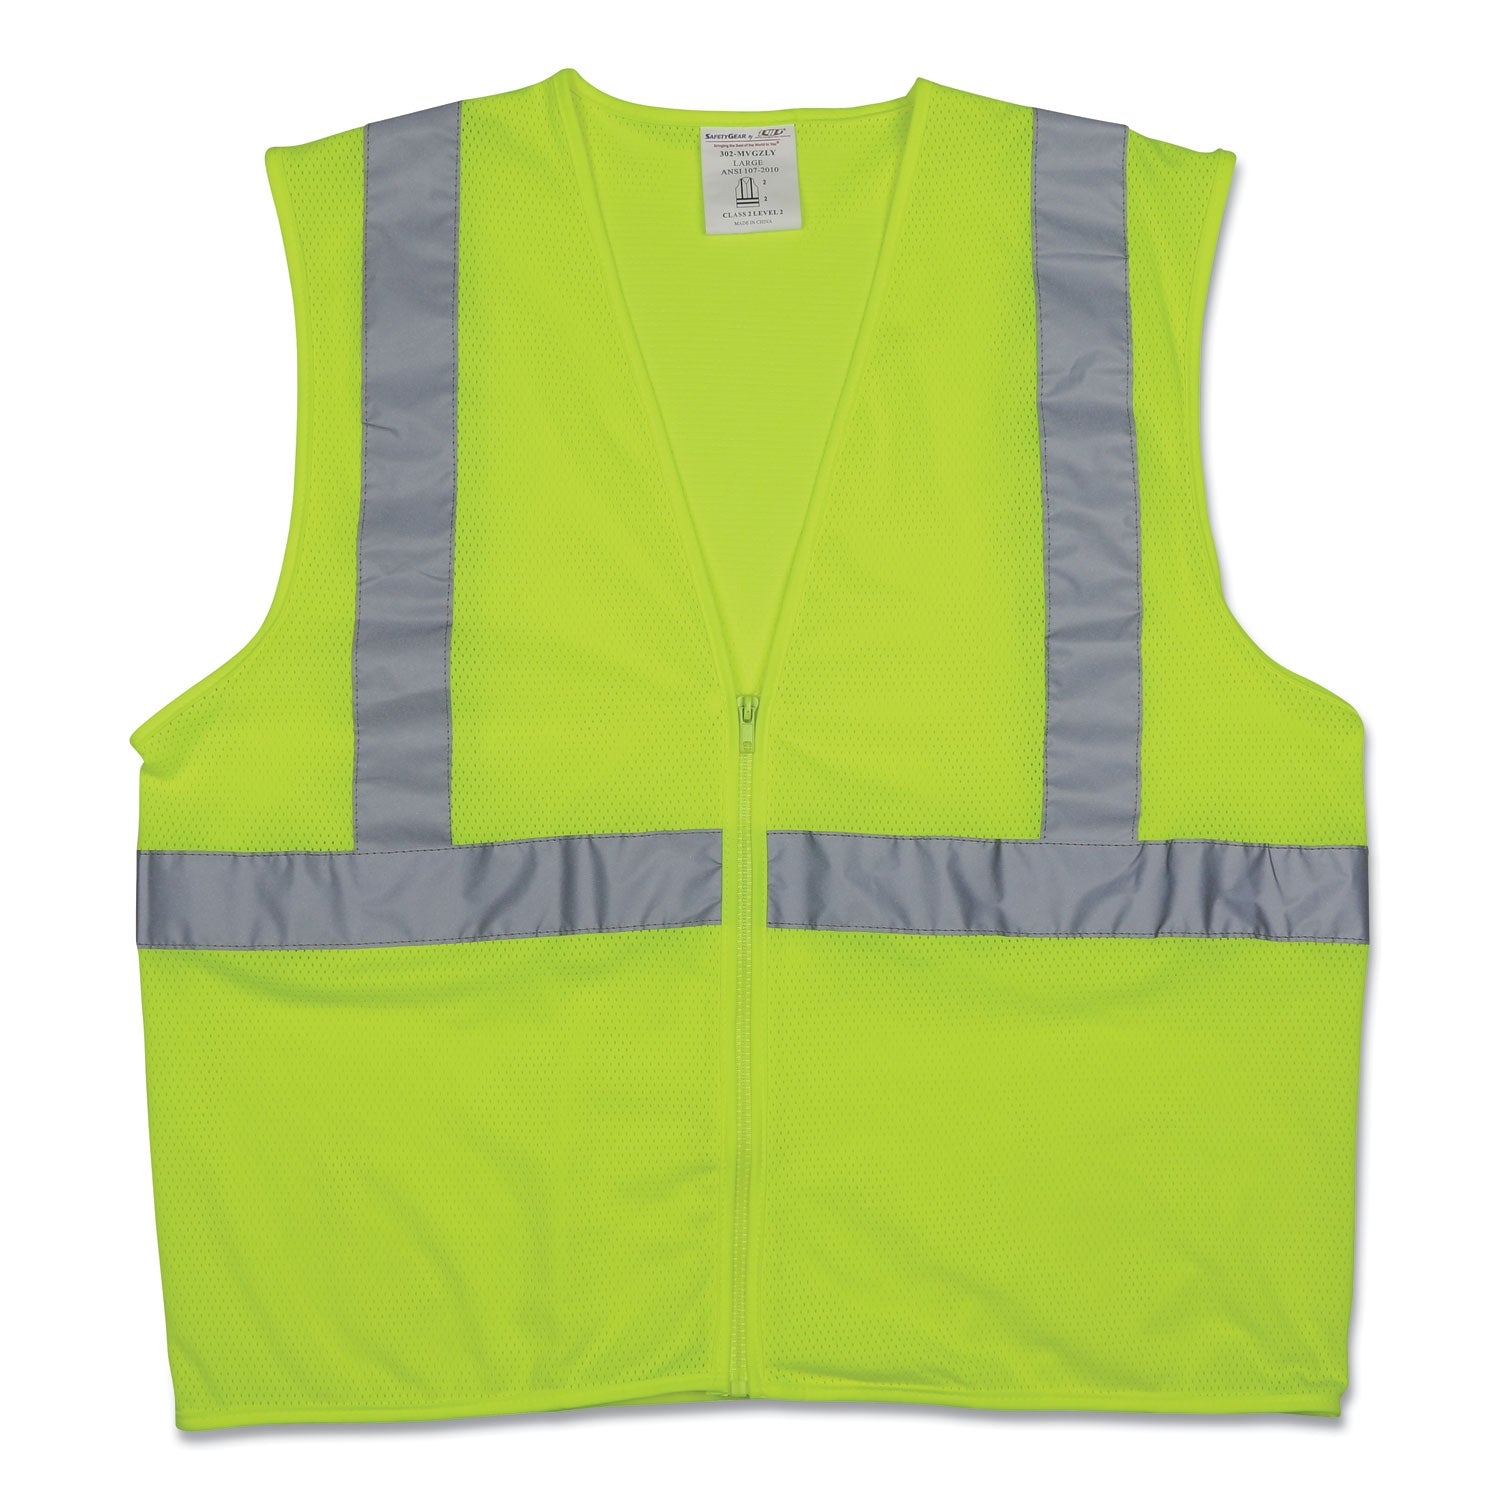 zipper-safety-vest-x-large-hi-viz-lime-yellow_pid302mvgzlyxl - 1